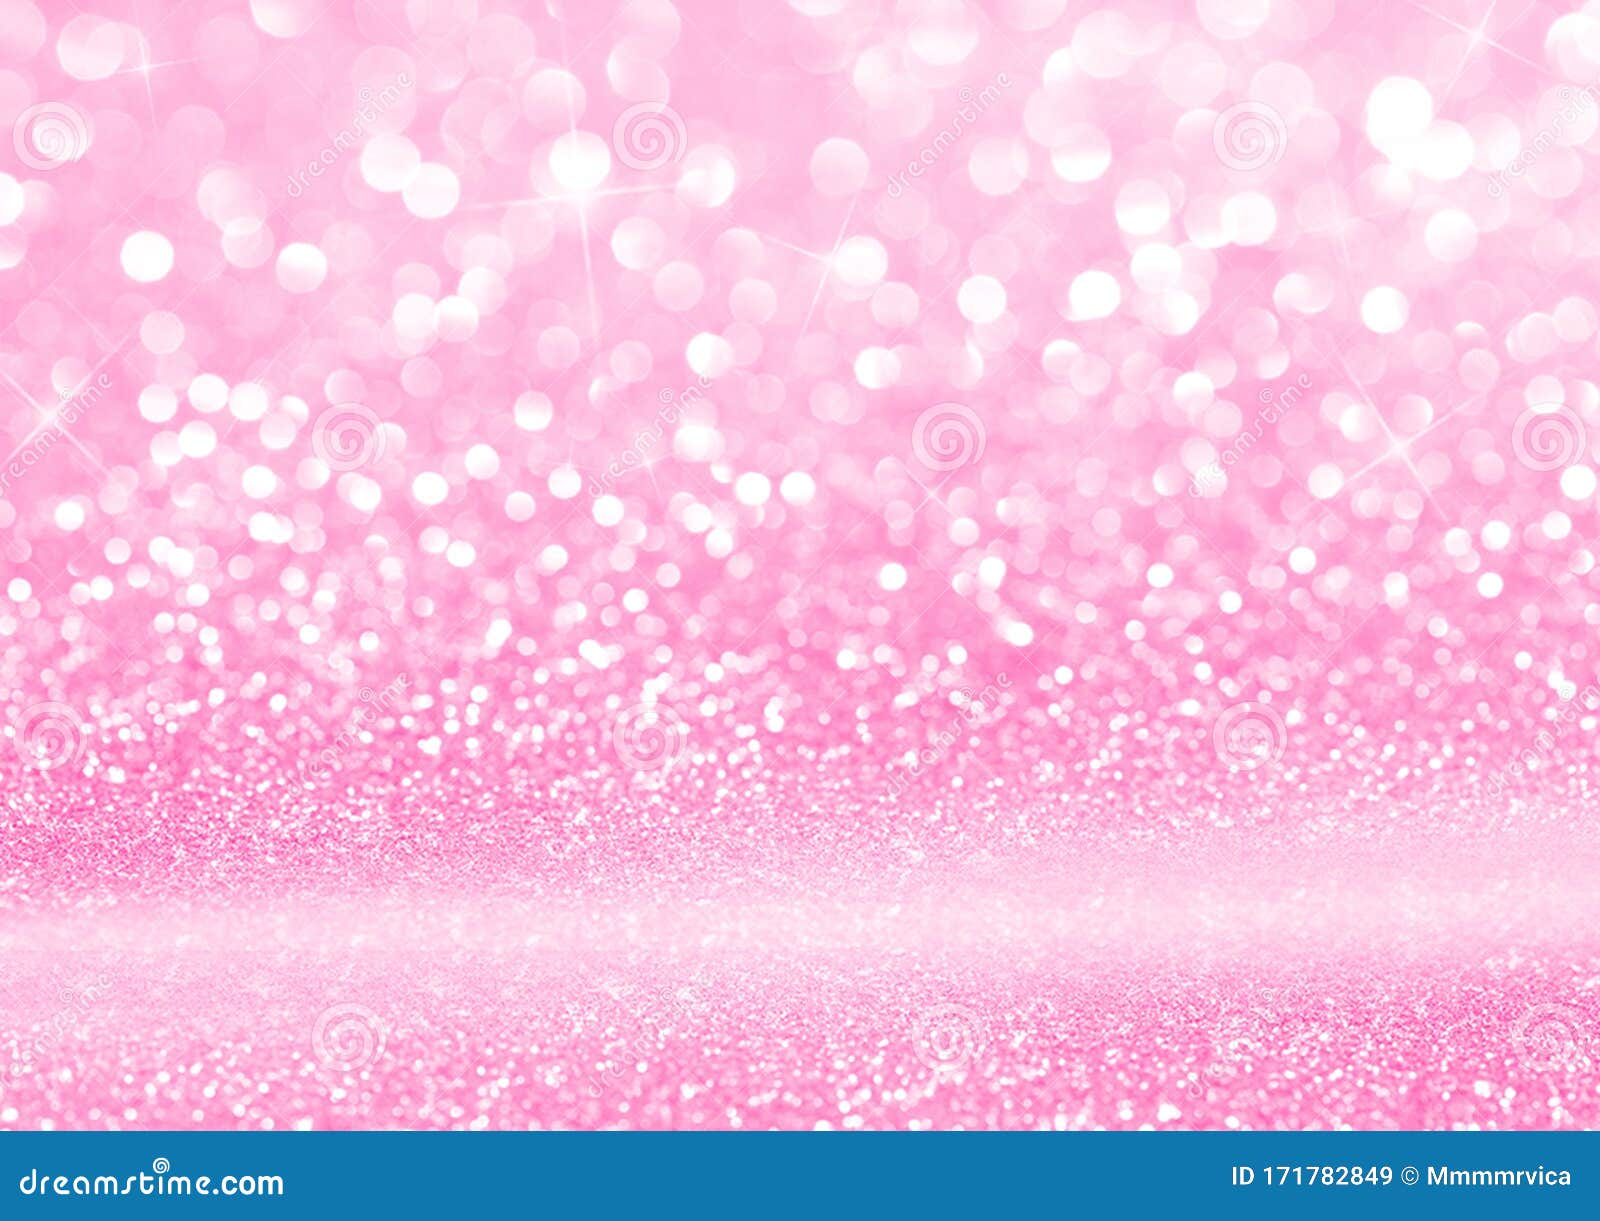 Nền hồng phấn với tinh thể lấp lánh vector miễn phí - Khám phá vẻ đẹp lấp lánh của nền hồng phấn với tinh thể lấp lánh vector miễn phí. Các chi tiết và sự kết hợp tạo nên một tác phẩm nghệ thuật tuyệt đẹp có thể đưa ra cảm hứng cho biết bao ý tưởng sáng tạo.